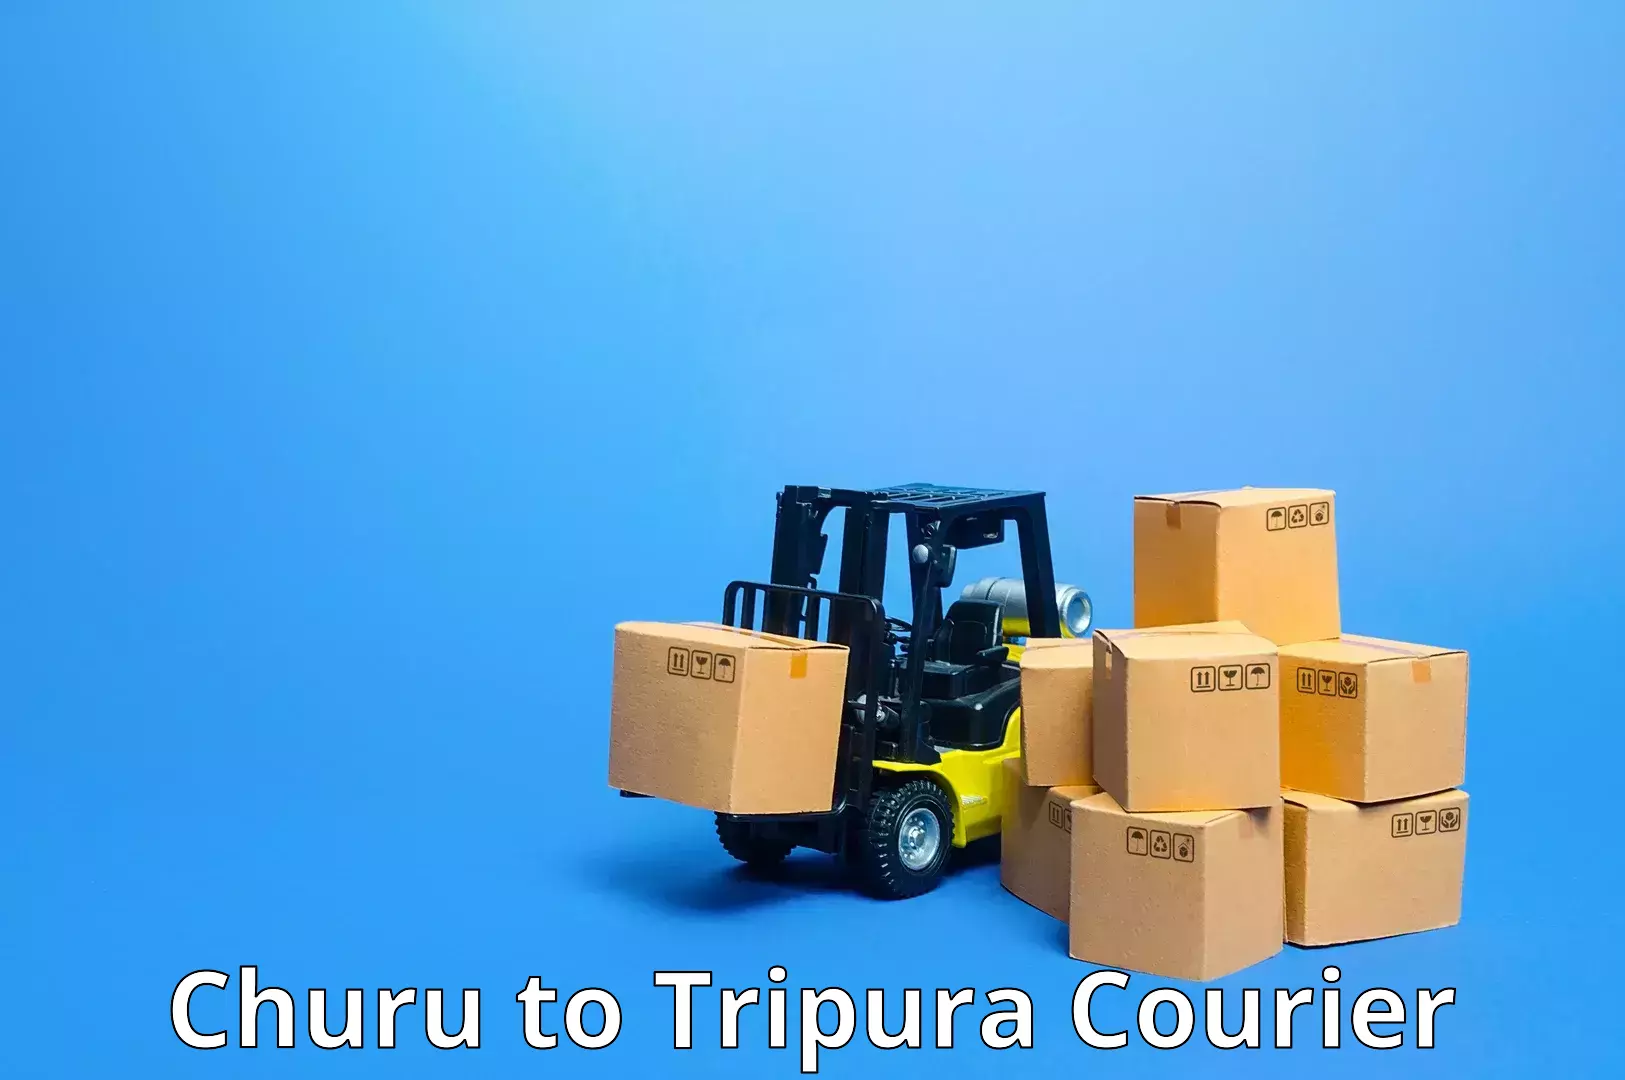 Express courier facilities Churu to IIIT Agartala